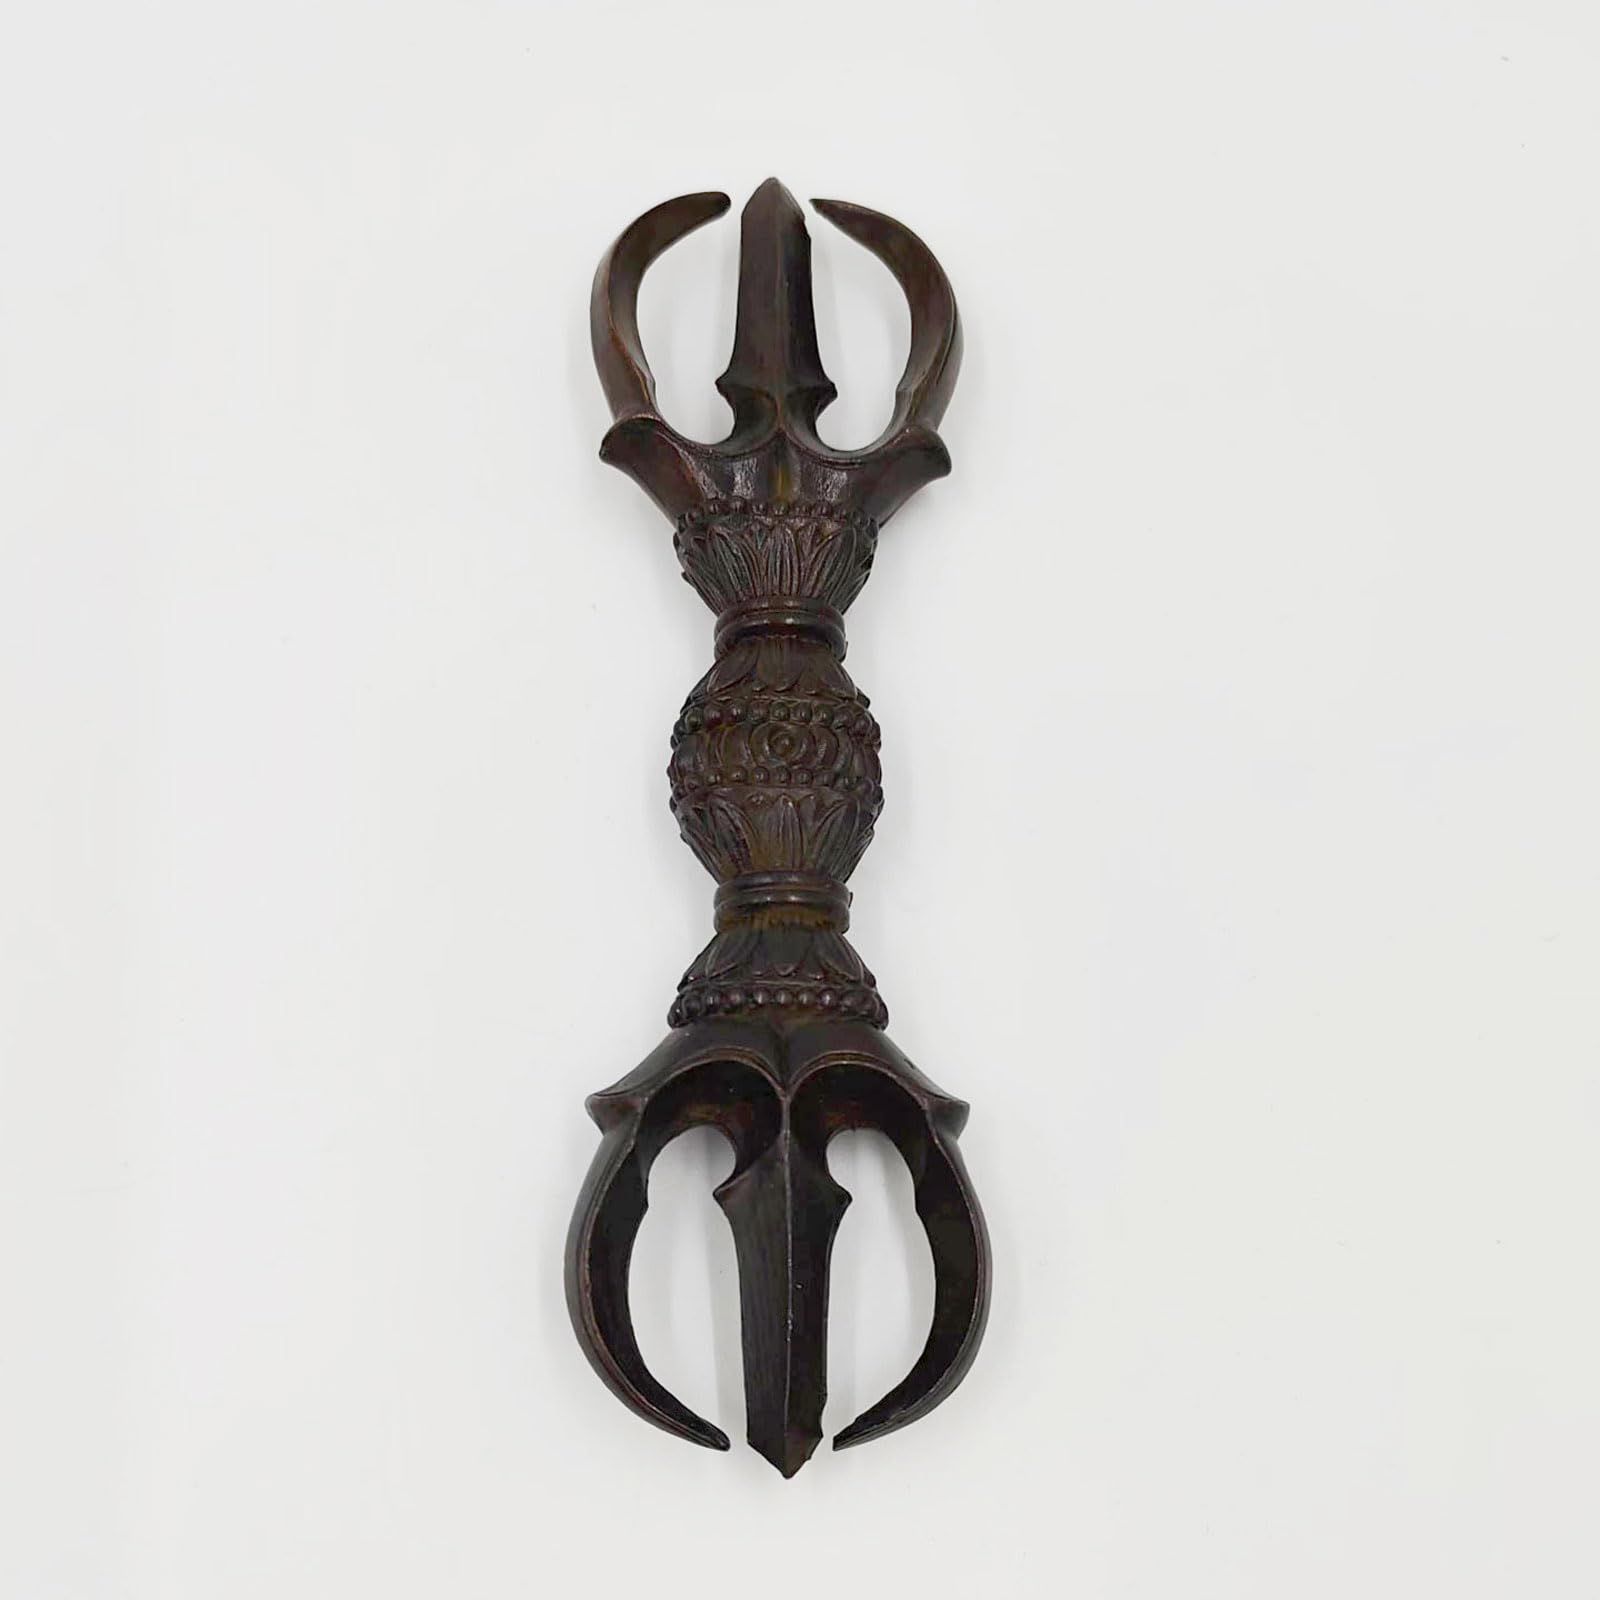 三鈷杵 合金製 長さ15cm 密教で使われる仏具 密教法具 寺院仏具 手道具 